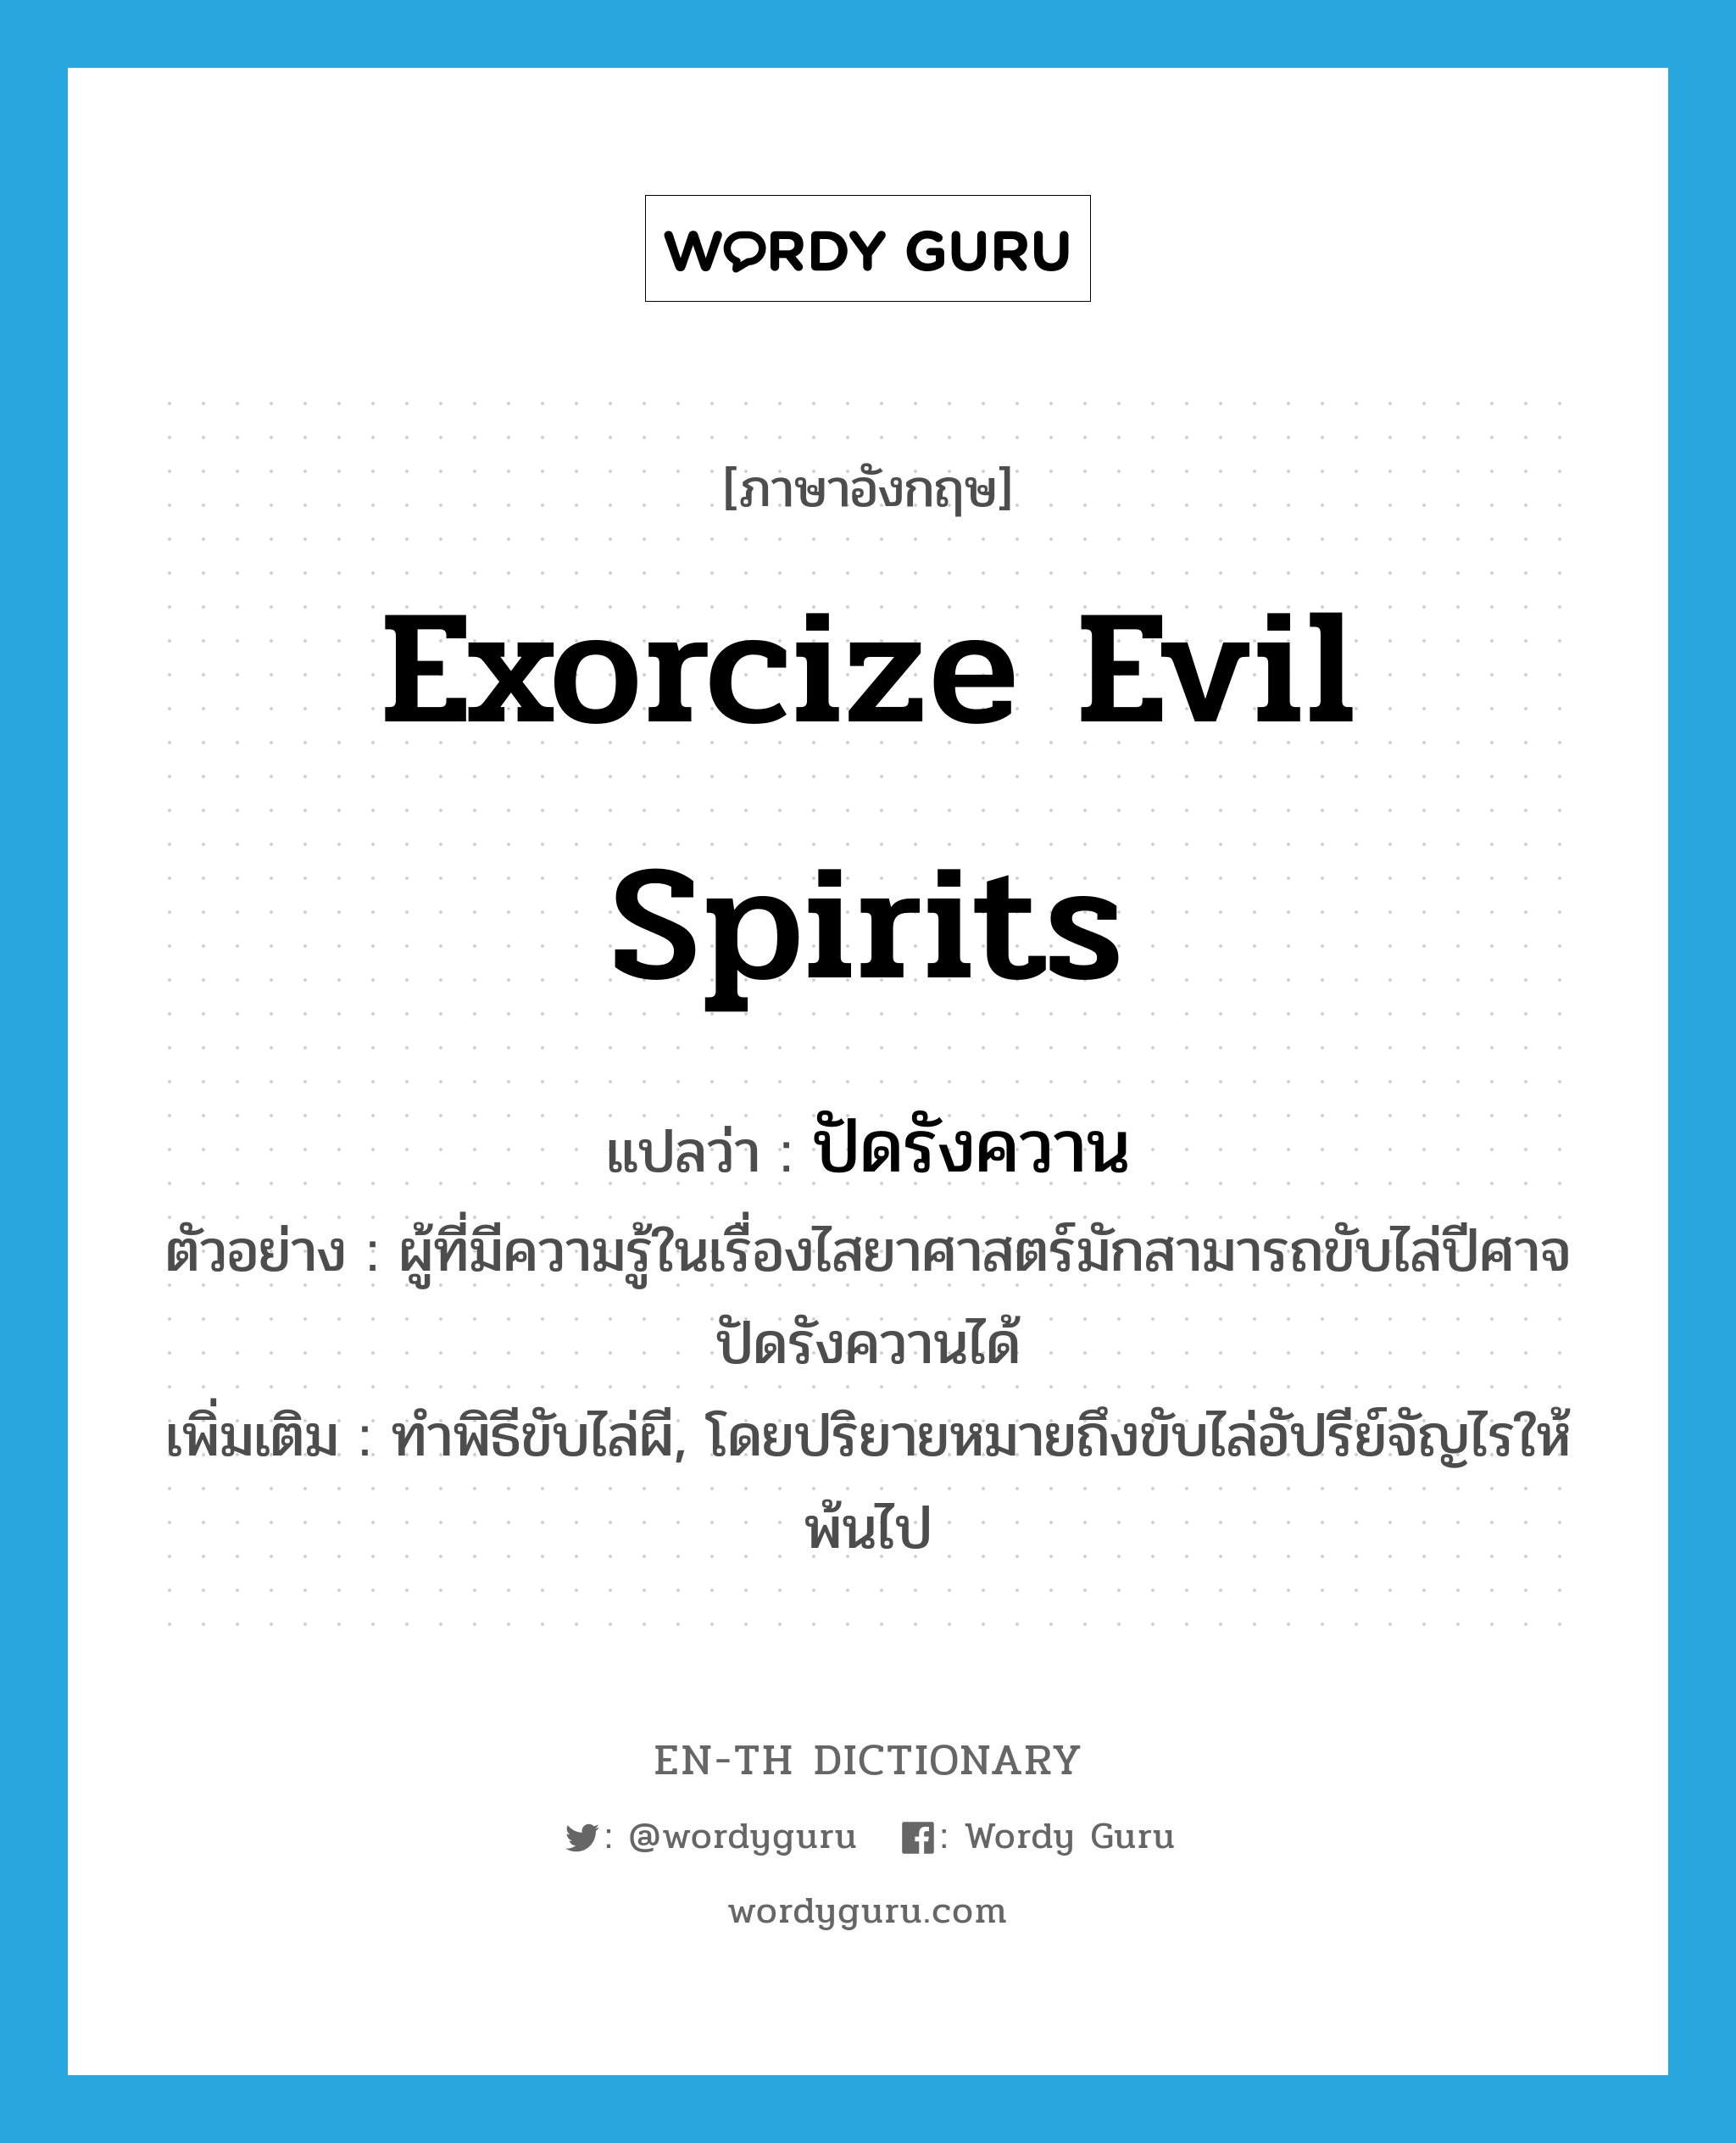 exorcize evil spirits แปลว่า?, คำศัพท์ภาษาอังกฤษ exorcize evil spirits แปลว่า ปัดรังควาน ประเภท V ตัวอย่าง ผู้ที่มีความรู้ในเรื่องไสยาศาสตร์มักสามารถขับไล่ปีศาจ ปัดรังควานได้ เพิ่มเติม ทำพิธีขับไล่ผี, โดยปริยายหมายถึงขับไล่อัปรีย์จัญไรให้พ้นไป หมวด V